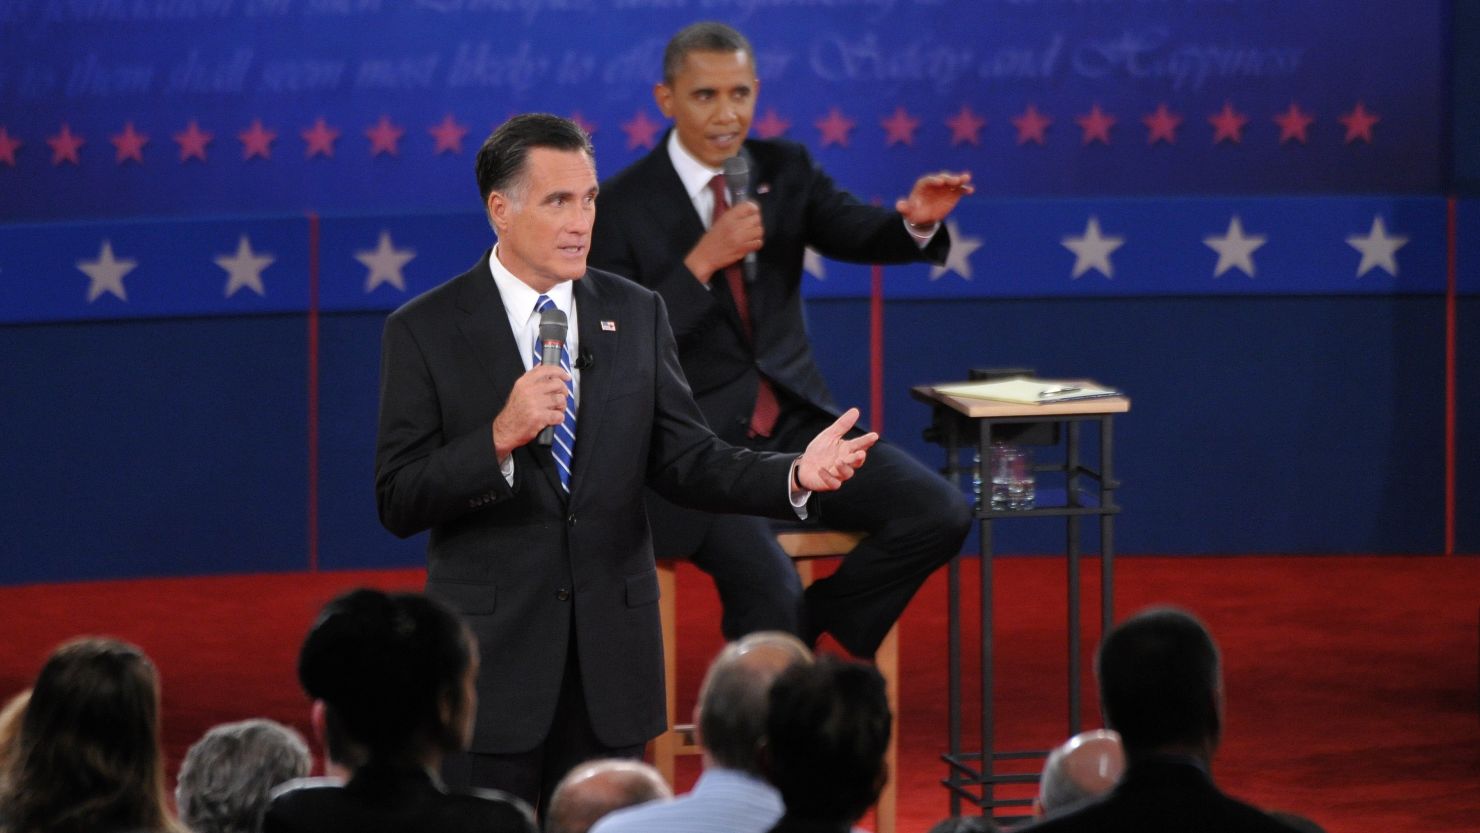 Obama Romney debate